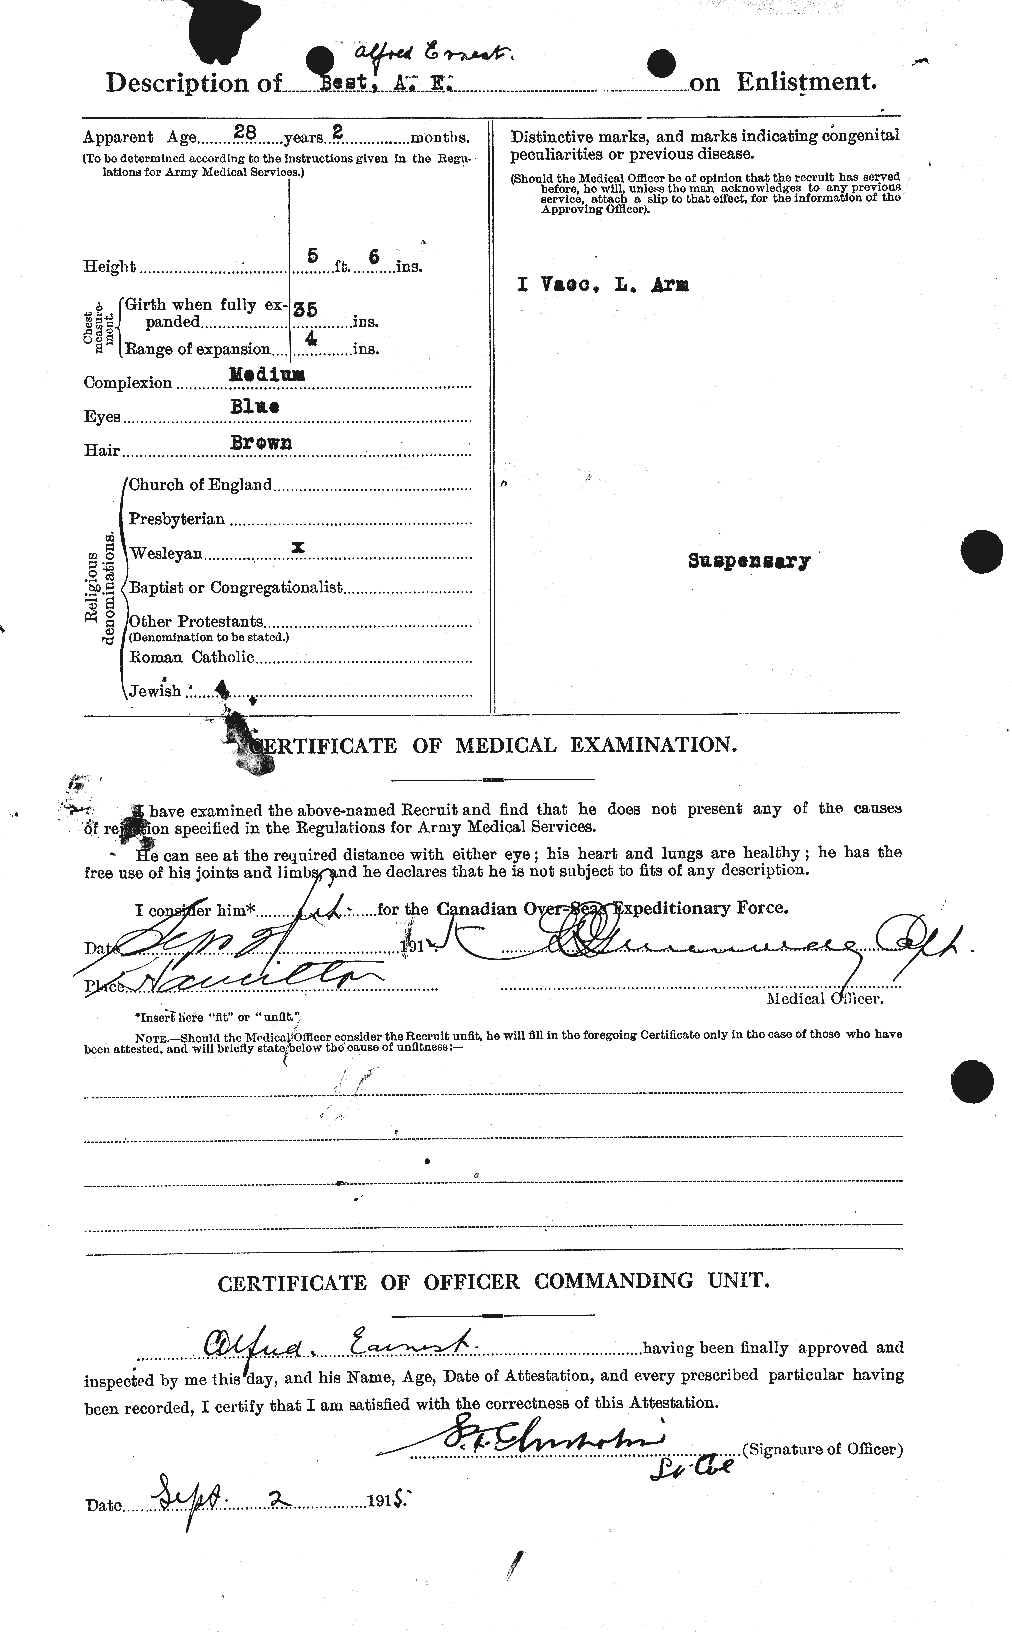 Dossiers du Personnel de la Première Guerre mondiale - CEC 240217b